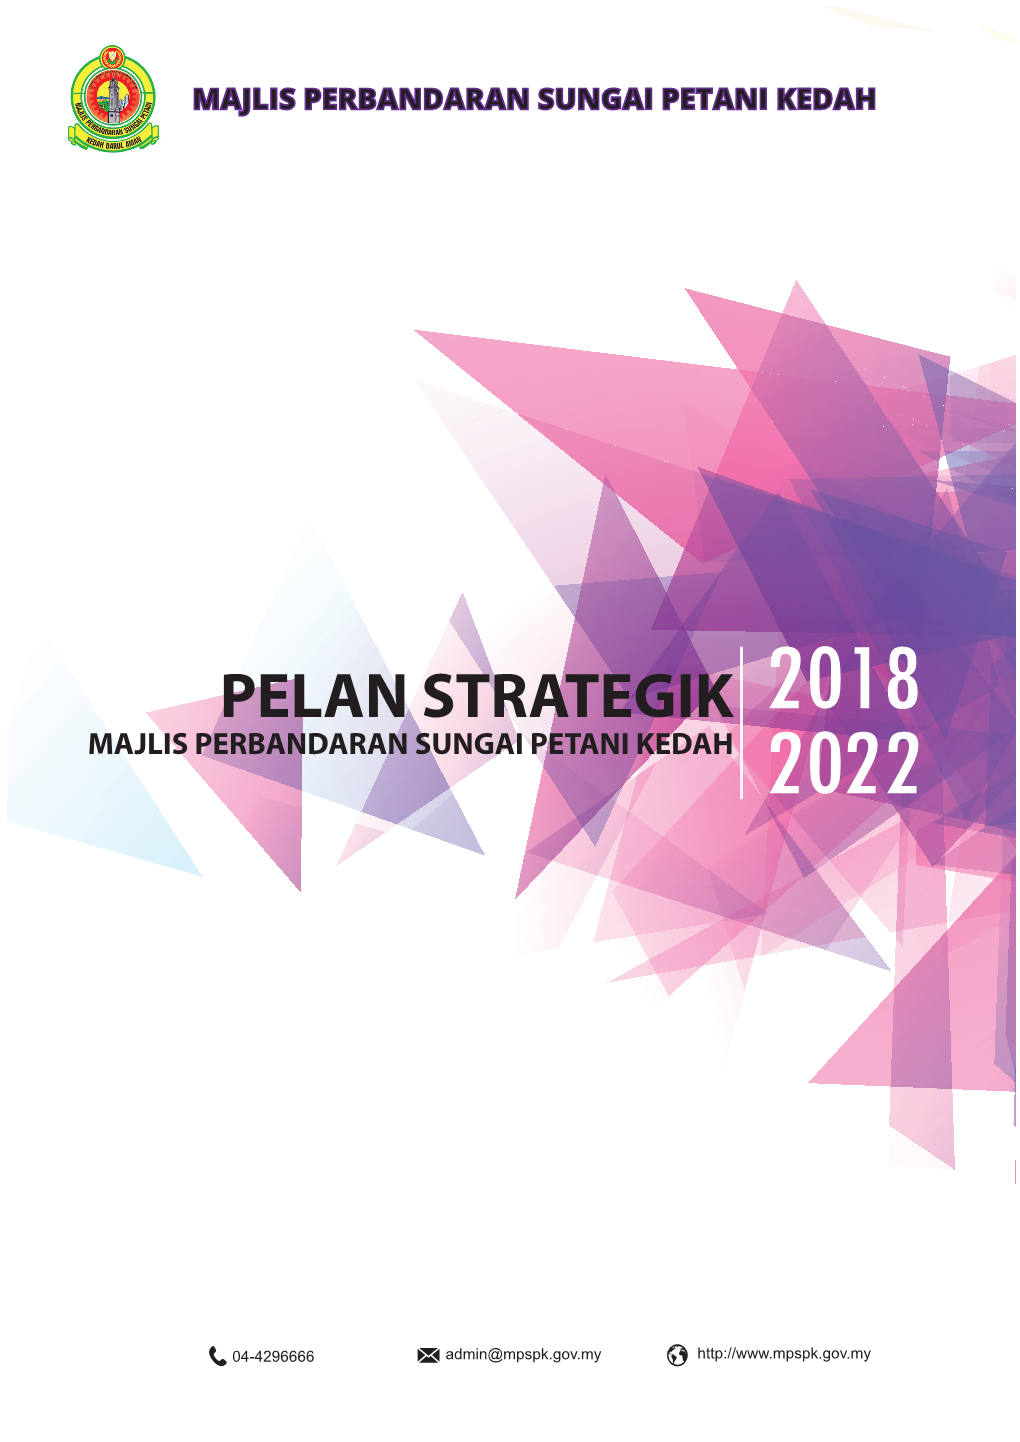 Pelan Strategik MPSPK 2018-2022 32 Elemen Penentu Kejayaan 33 Penutup 34